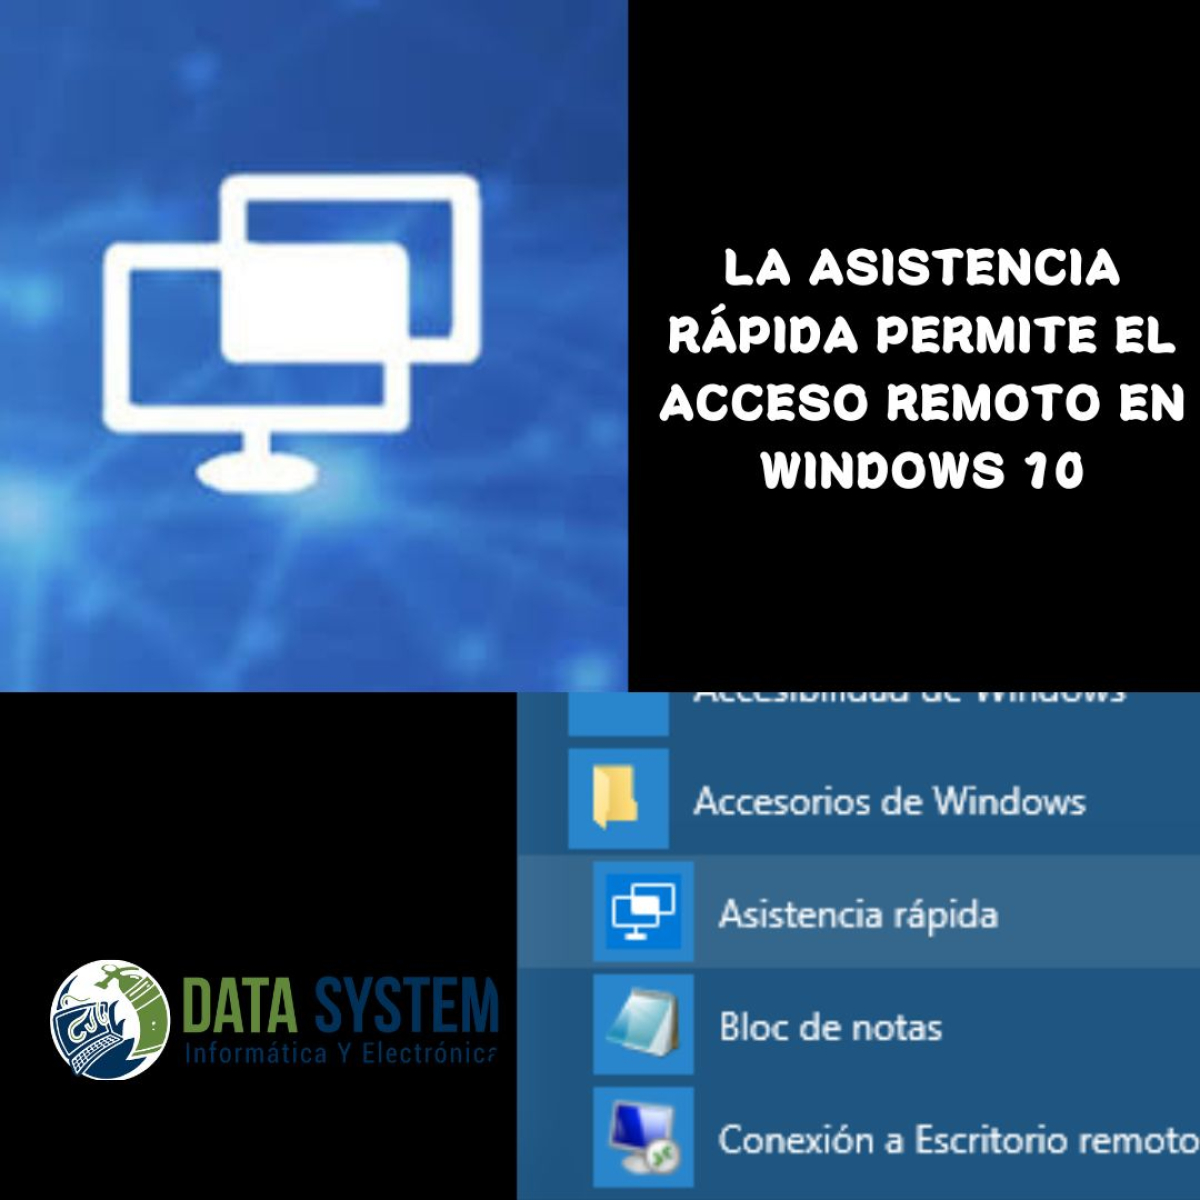 La asistencia rápida permite el acceso remoto en Windows 10